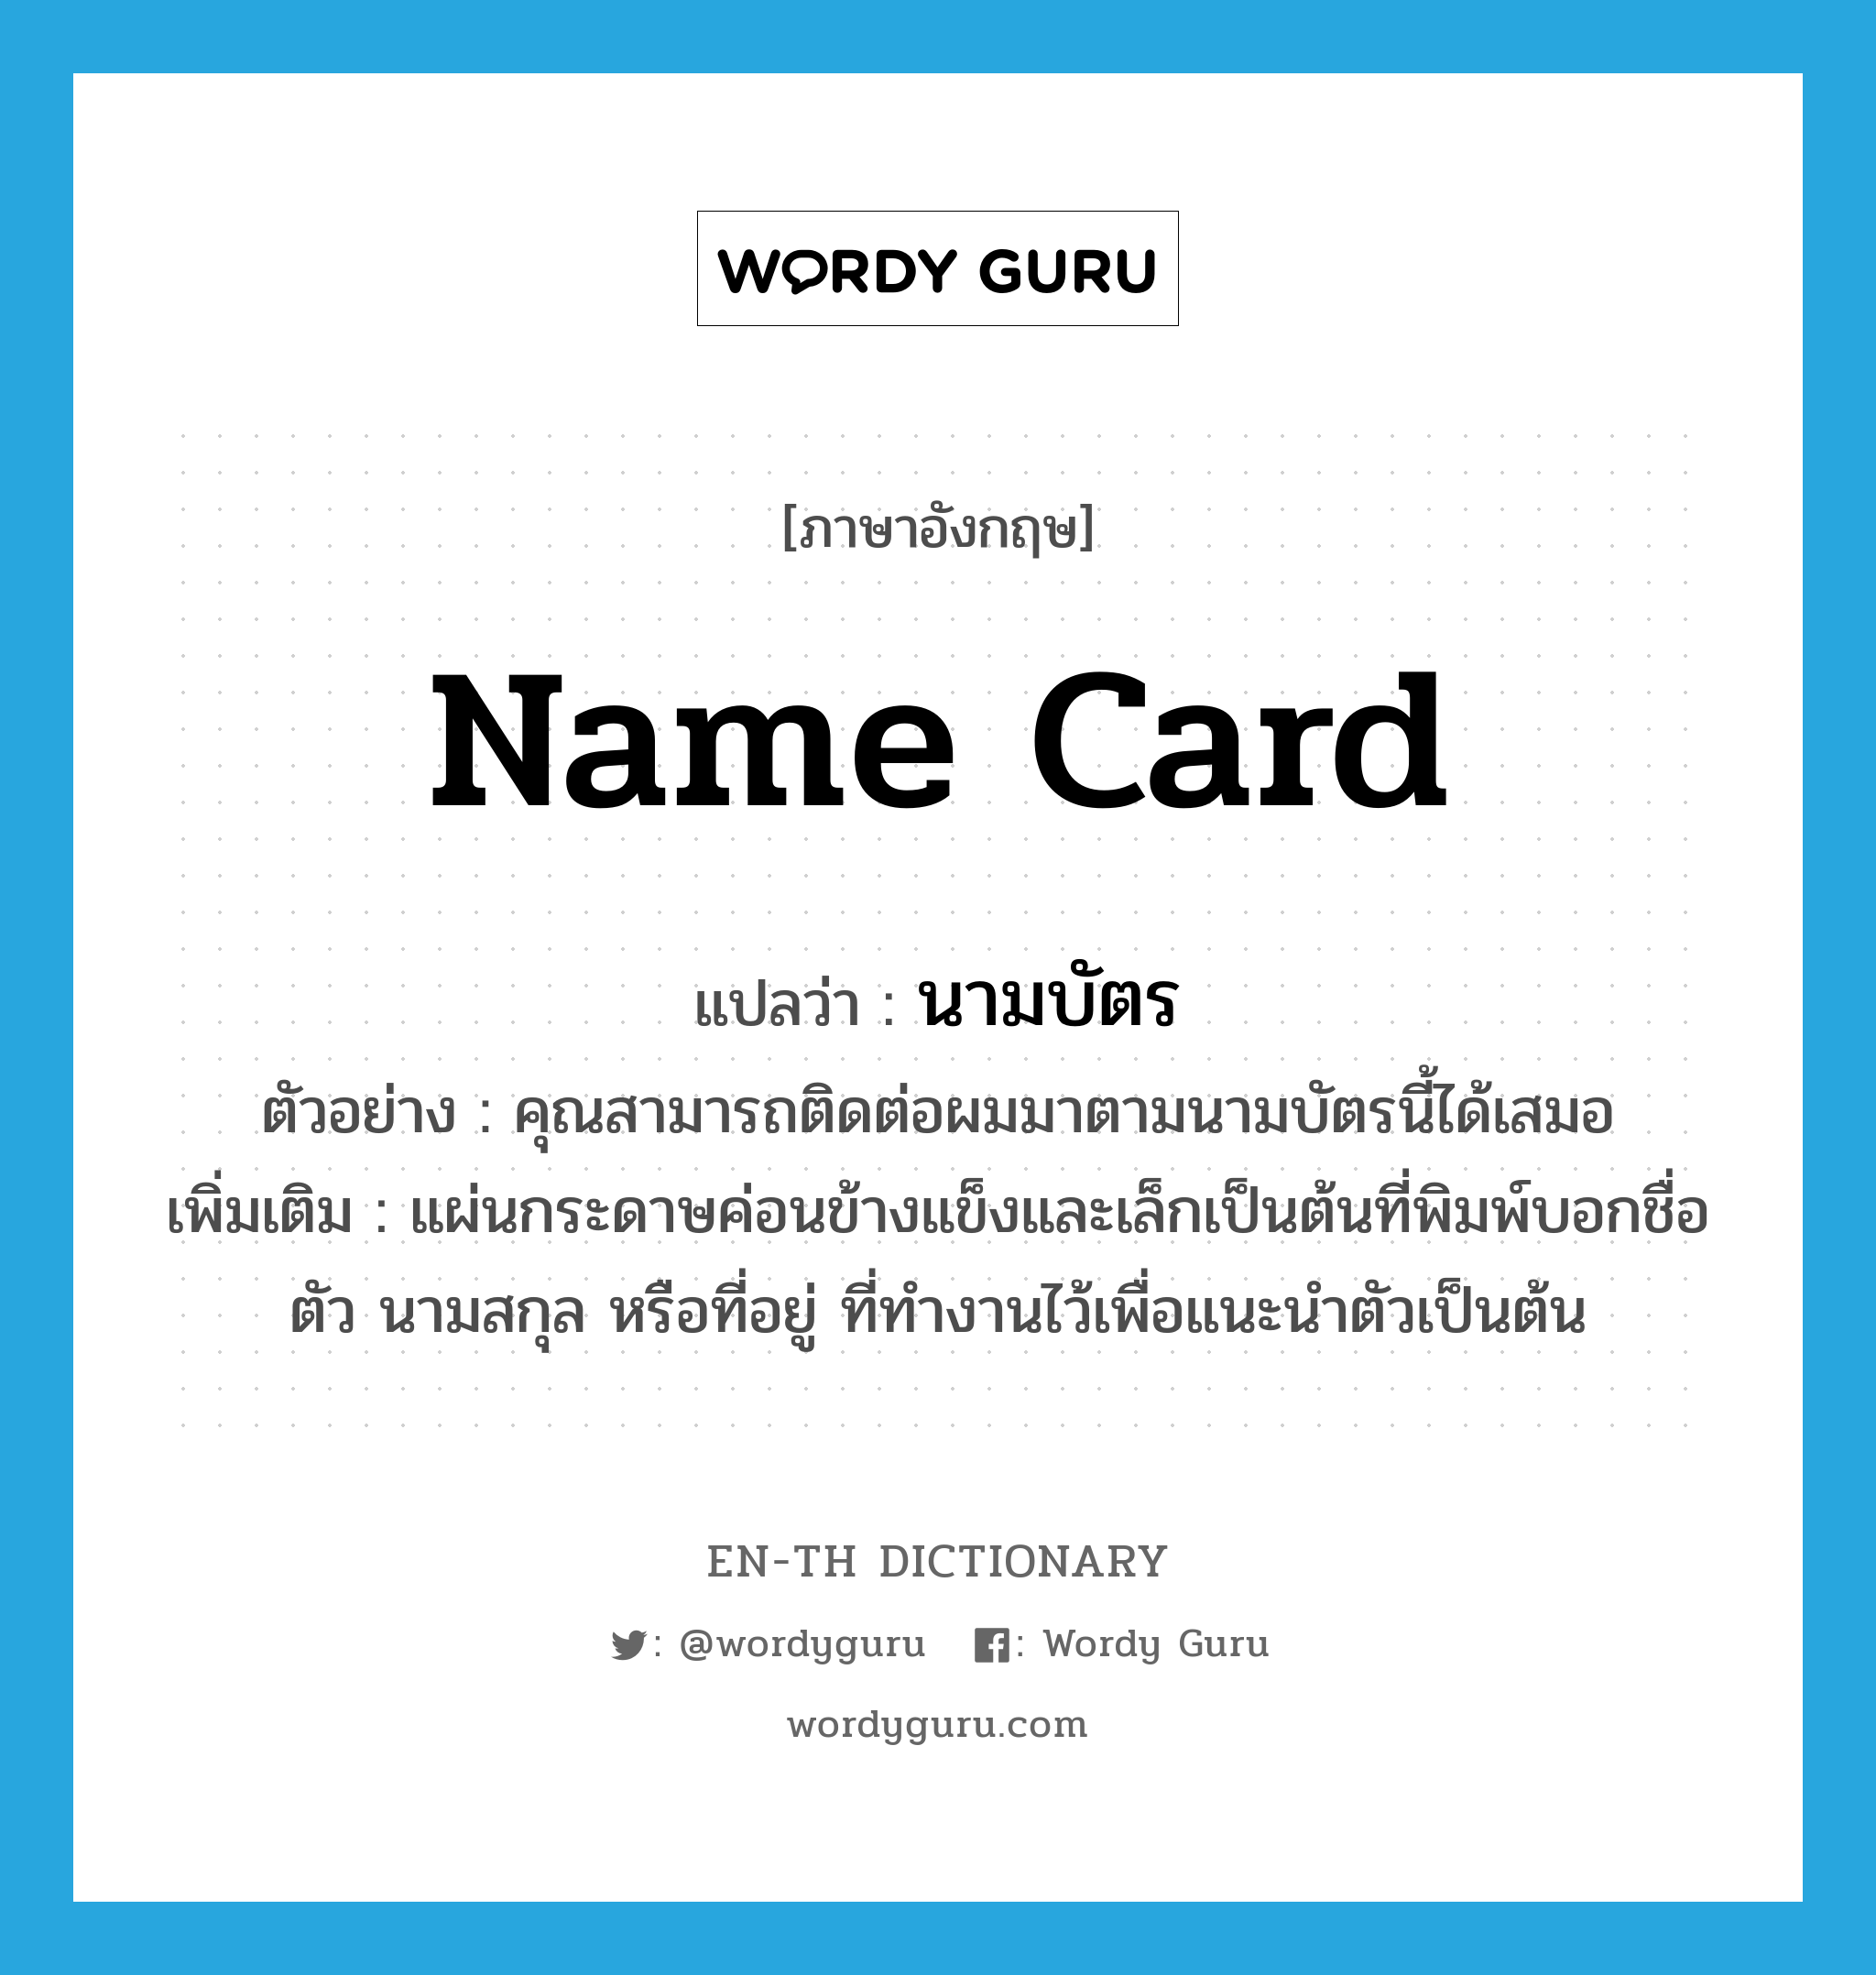 name card แปลว่า?, คำศัพท์ภาษาอังกฤษ name card แปลว่า นามบัตร ประเภท N ตัวอย่าง คุณสามารถติดต่อผมมาตามนามบัตรนี้ได้เสมอ เพิ่มเติม แผ่นกระดาษค่อนข้างแข็งและเล็กเป็นต้นที่พิมพ์บอกชื่อตัว นามสกุล หรือที่อยู่ ที่ทำงานไว้เพื่อแนะนำตัวเป็นต้น หมวด N